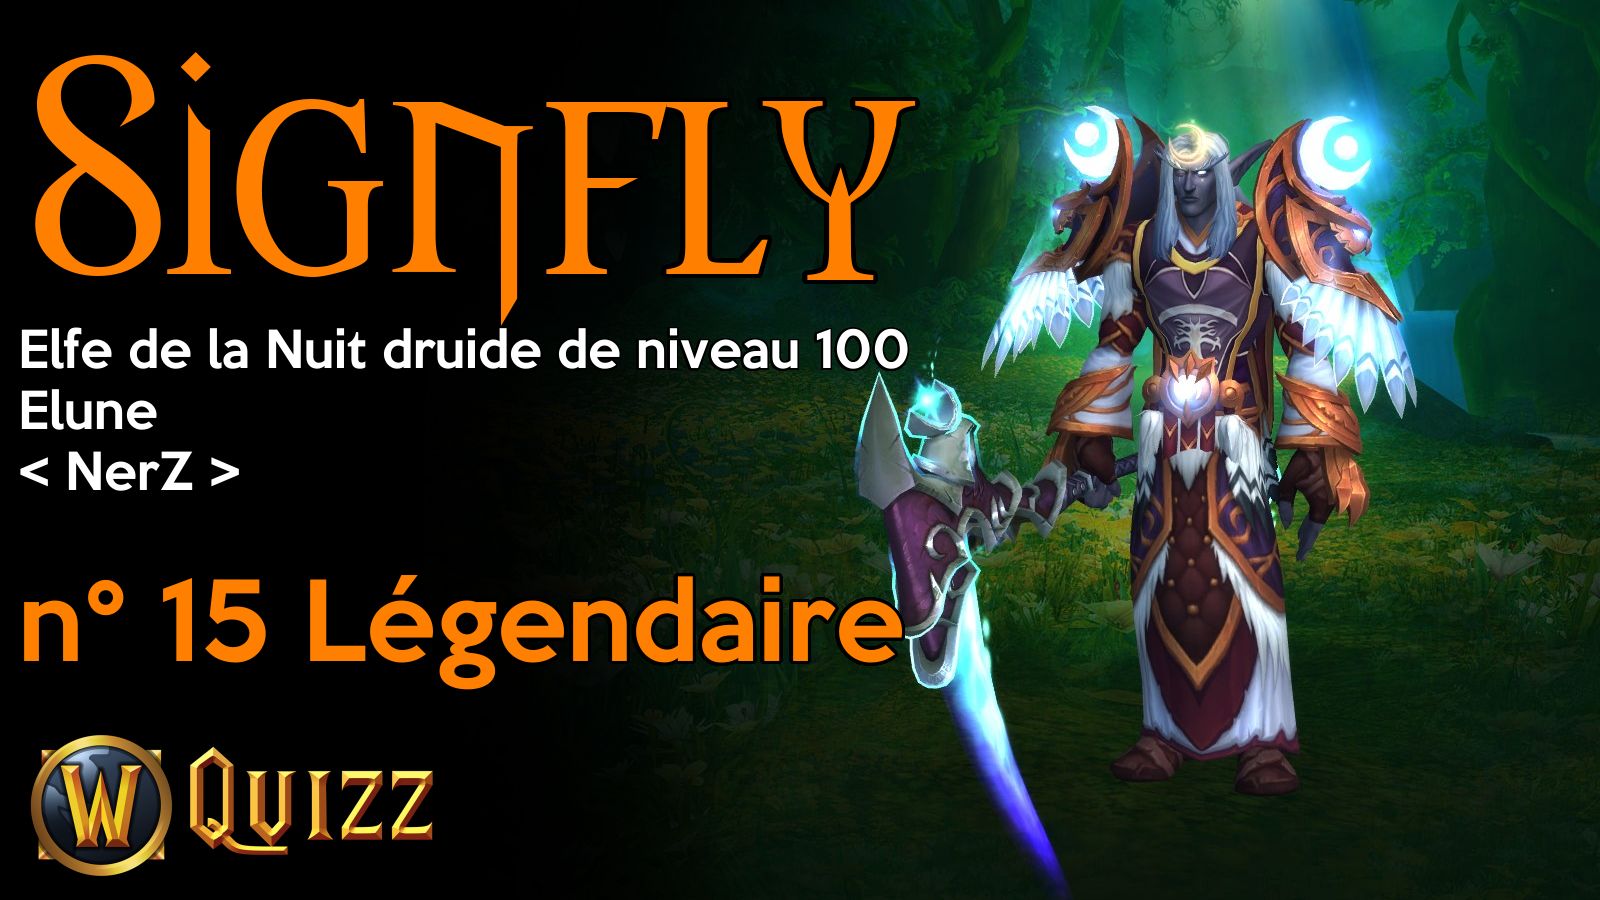 Signfly, Elfe de la Nuit druide de niveau 100, Elune